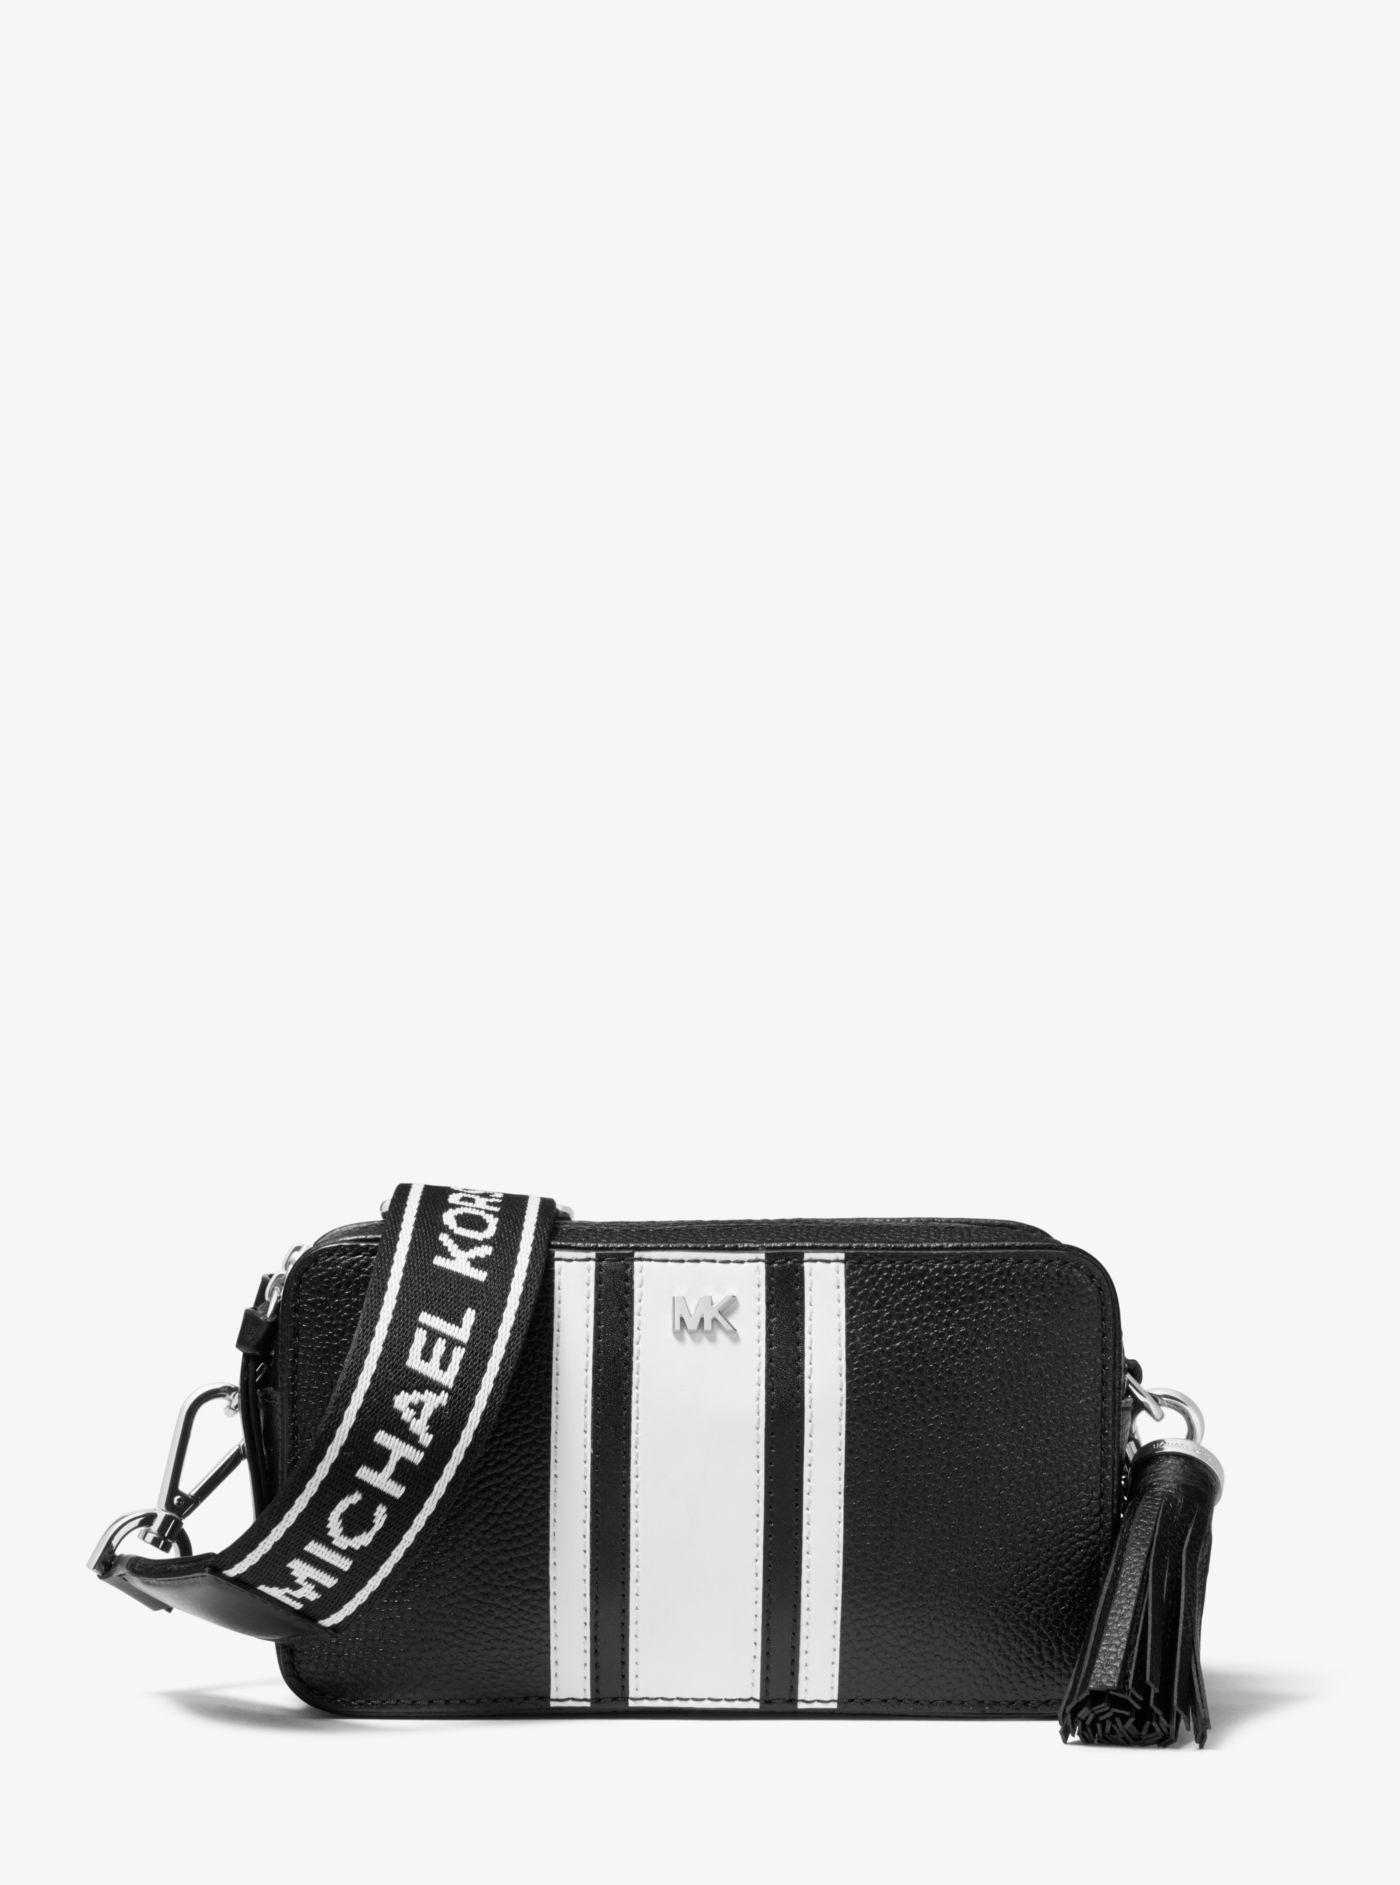 Michael Kors Leather Small Camera Bag 